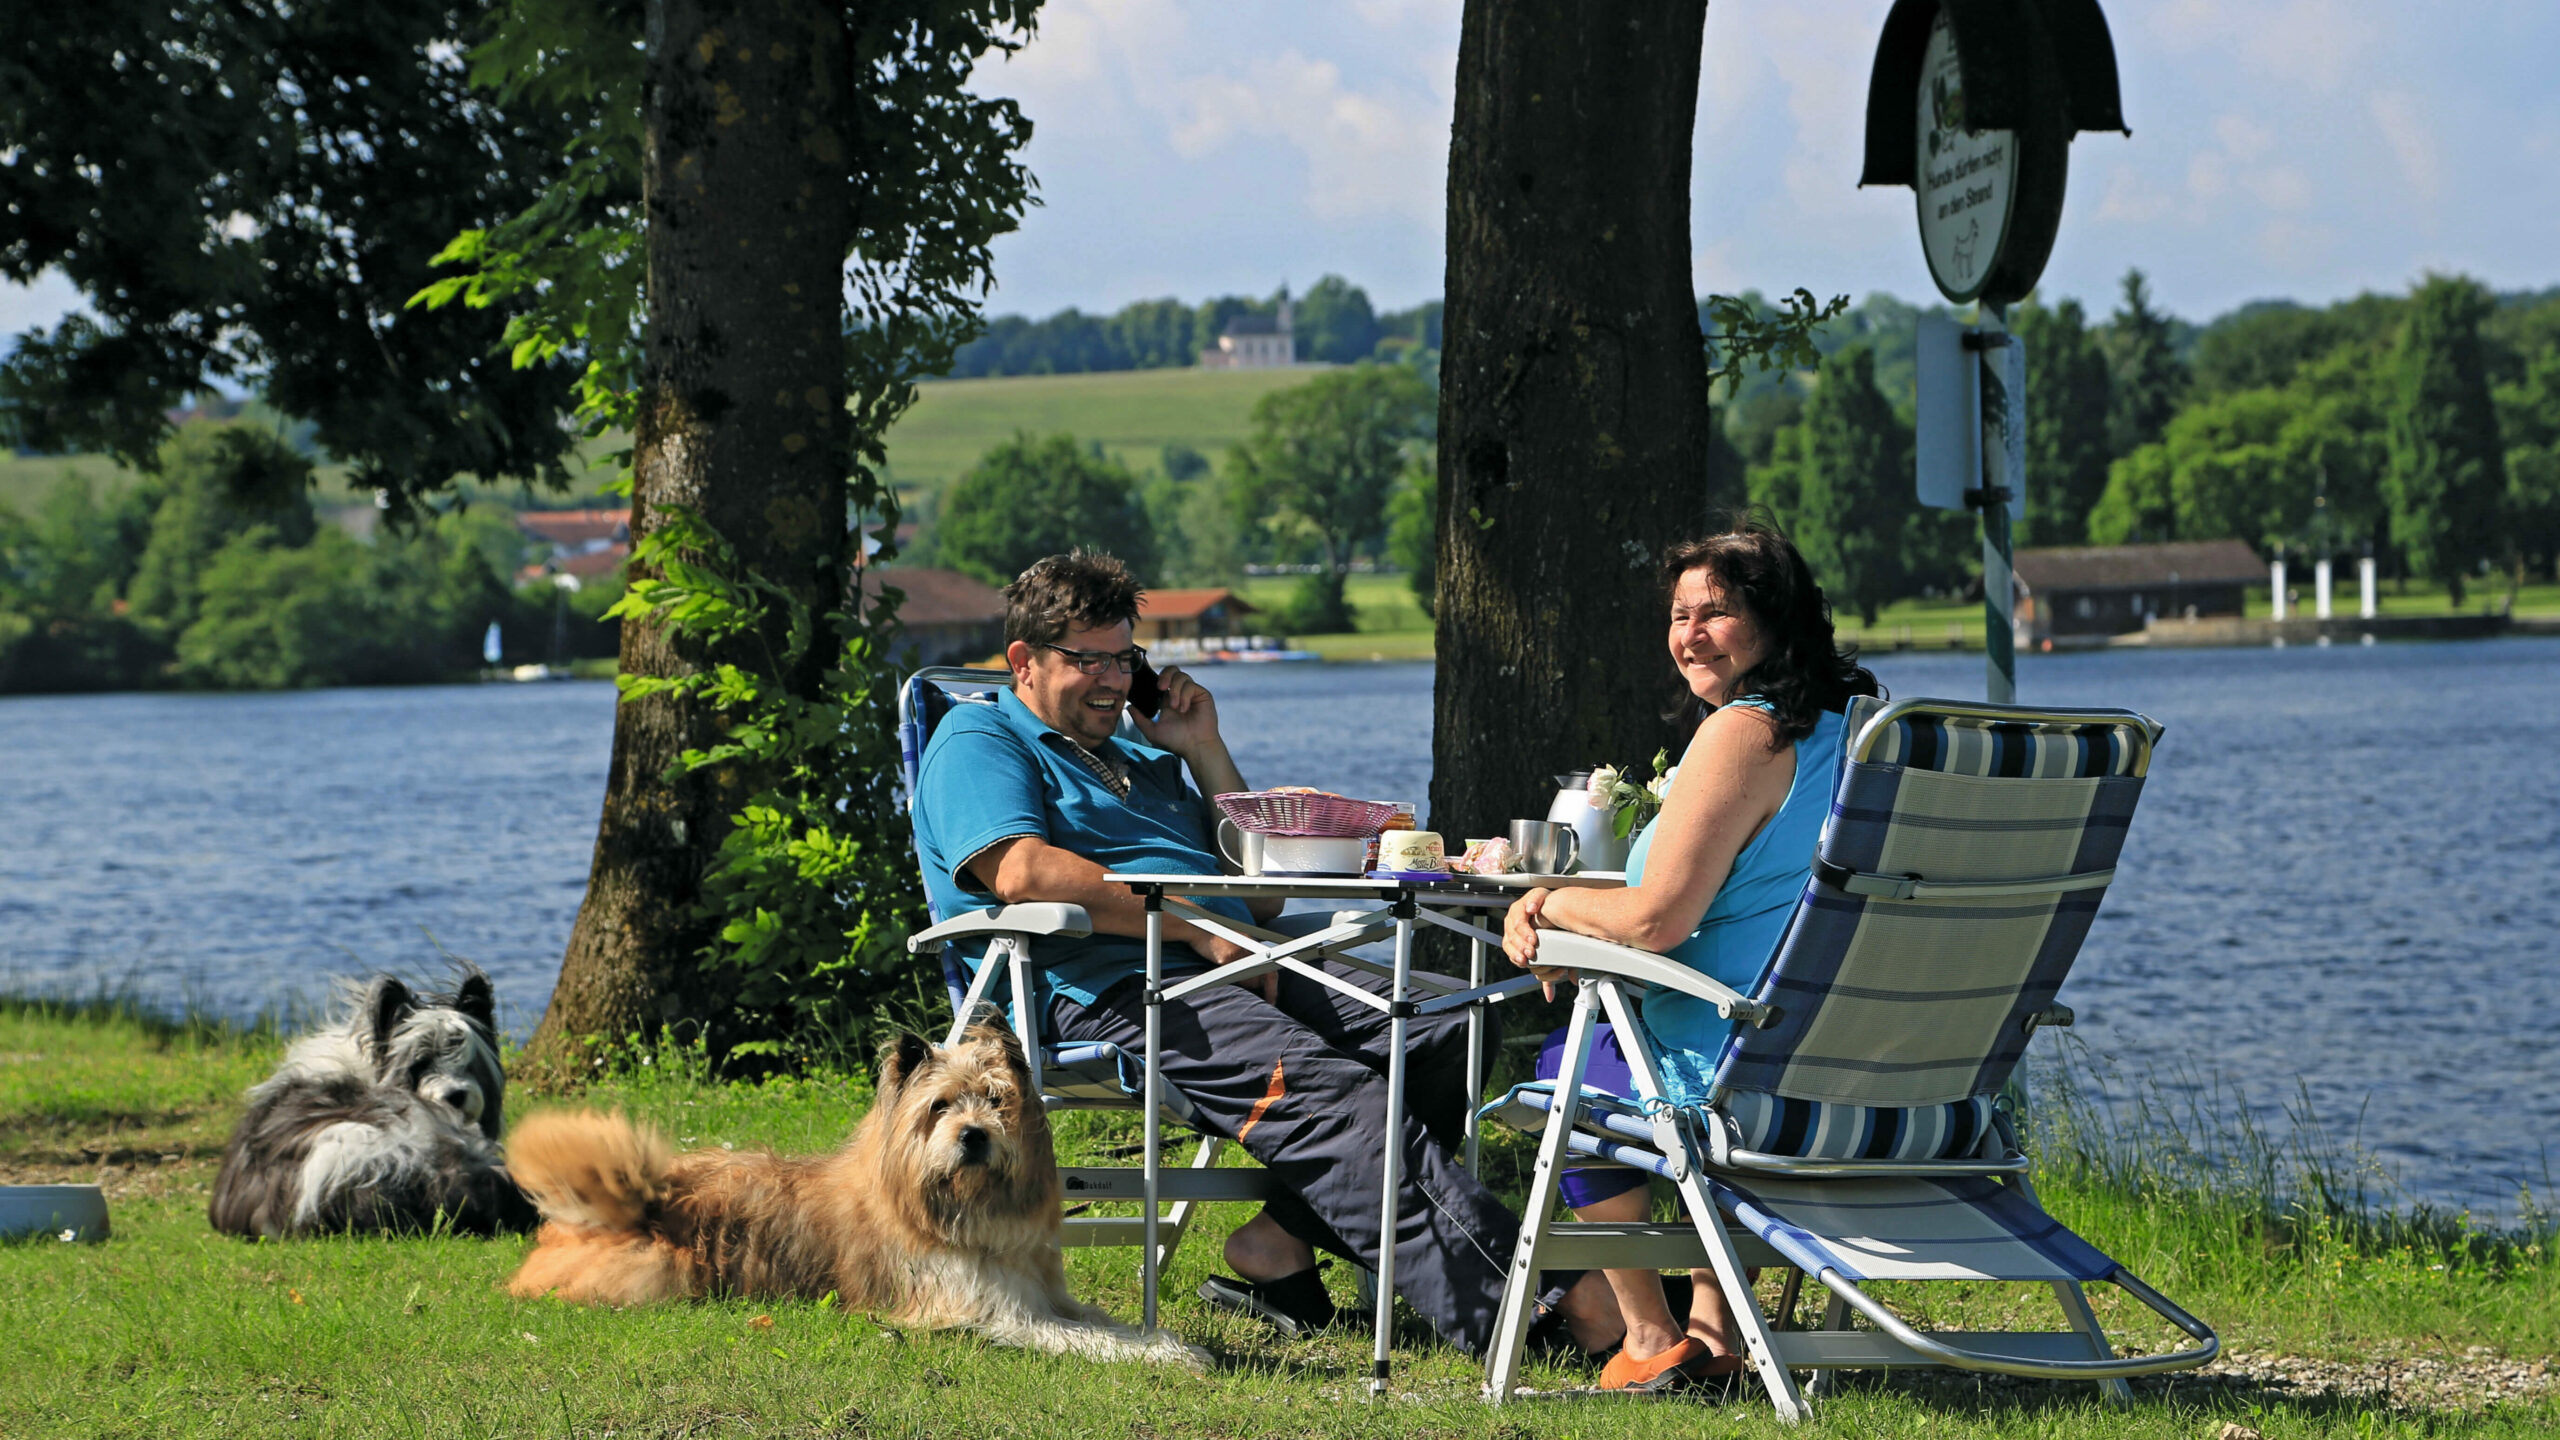 Zwei Personen an einem Campingtisch und zwei flauschige Hunde sitzen vor dem See